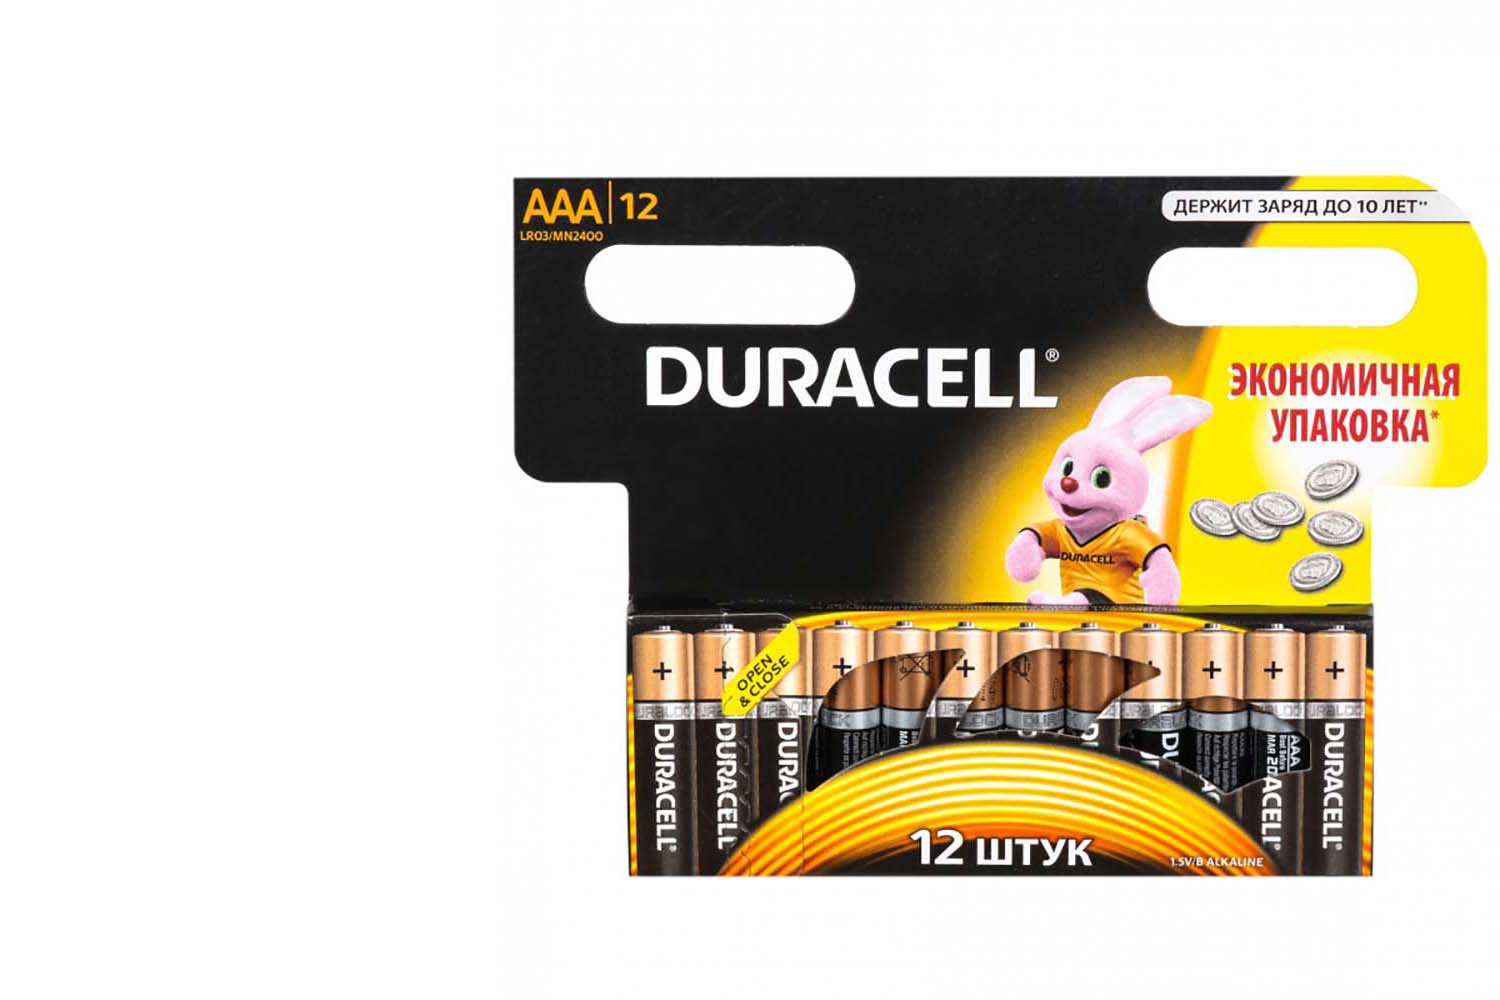 Батарейка duracell мизинчиковые ааа 12шт цена за упаковка